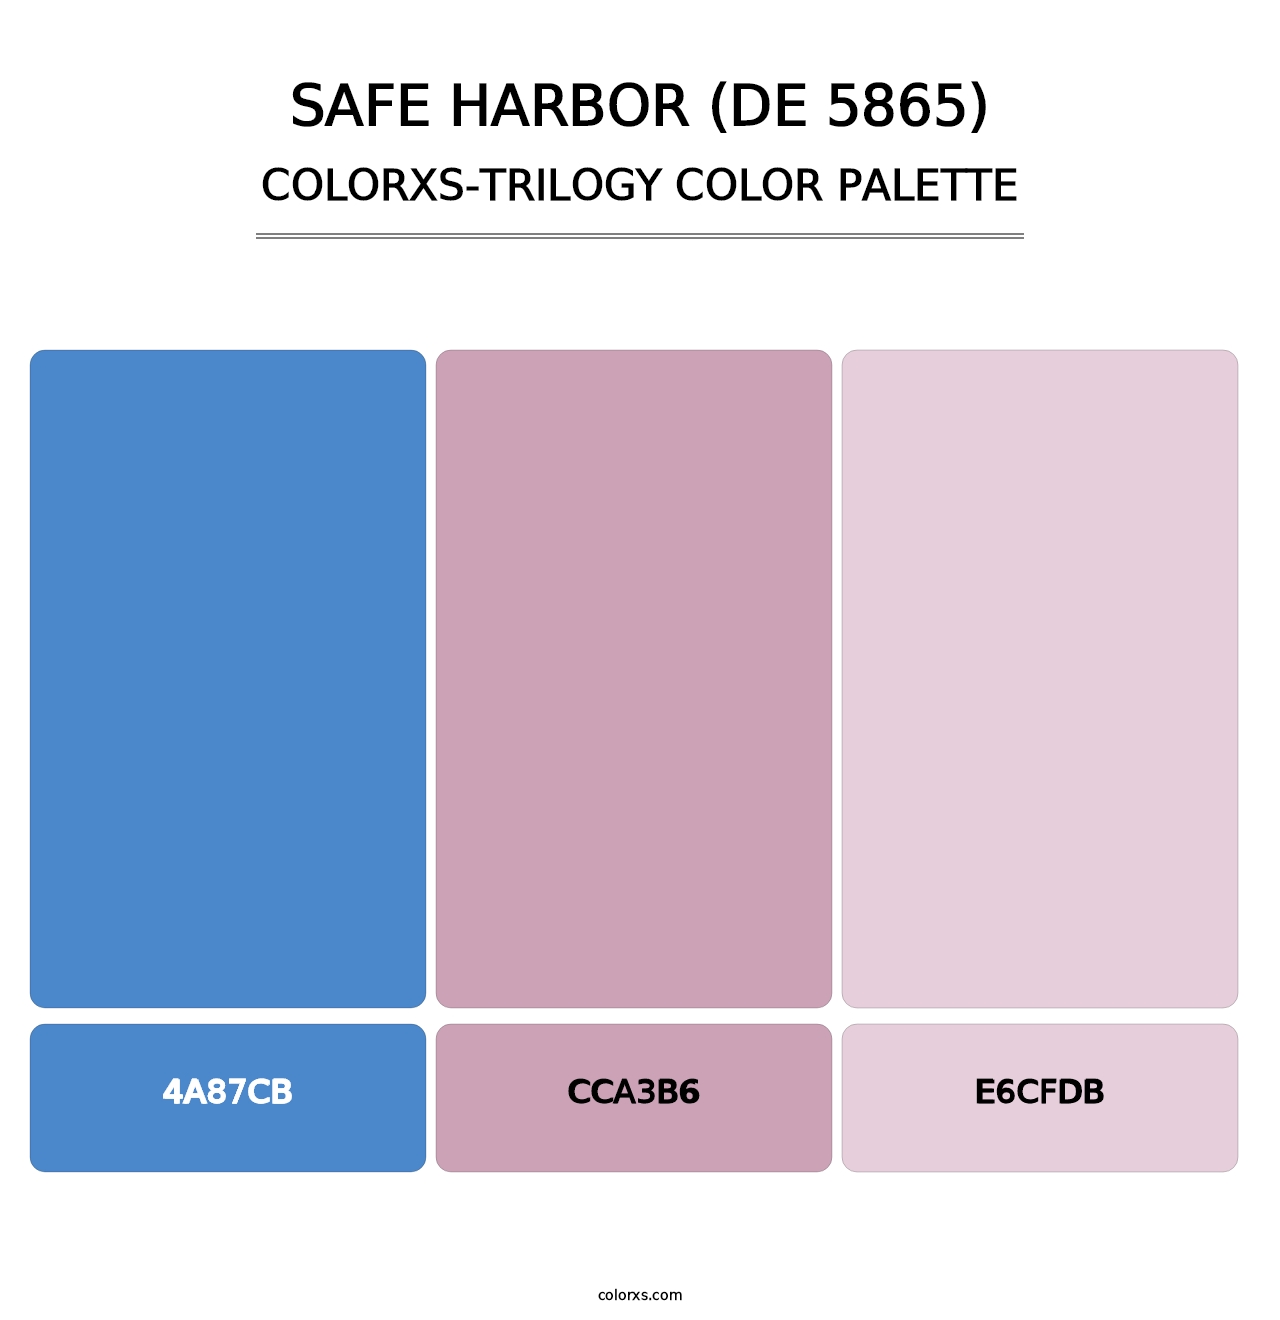 Safe Harbor (DE 5865) - Colorxs Trilogy Palette